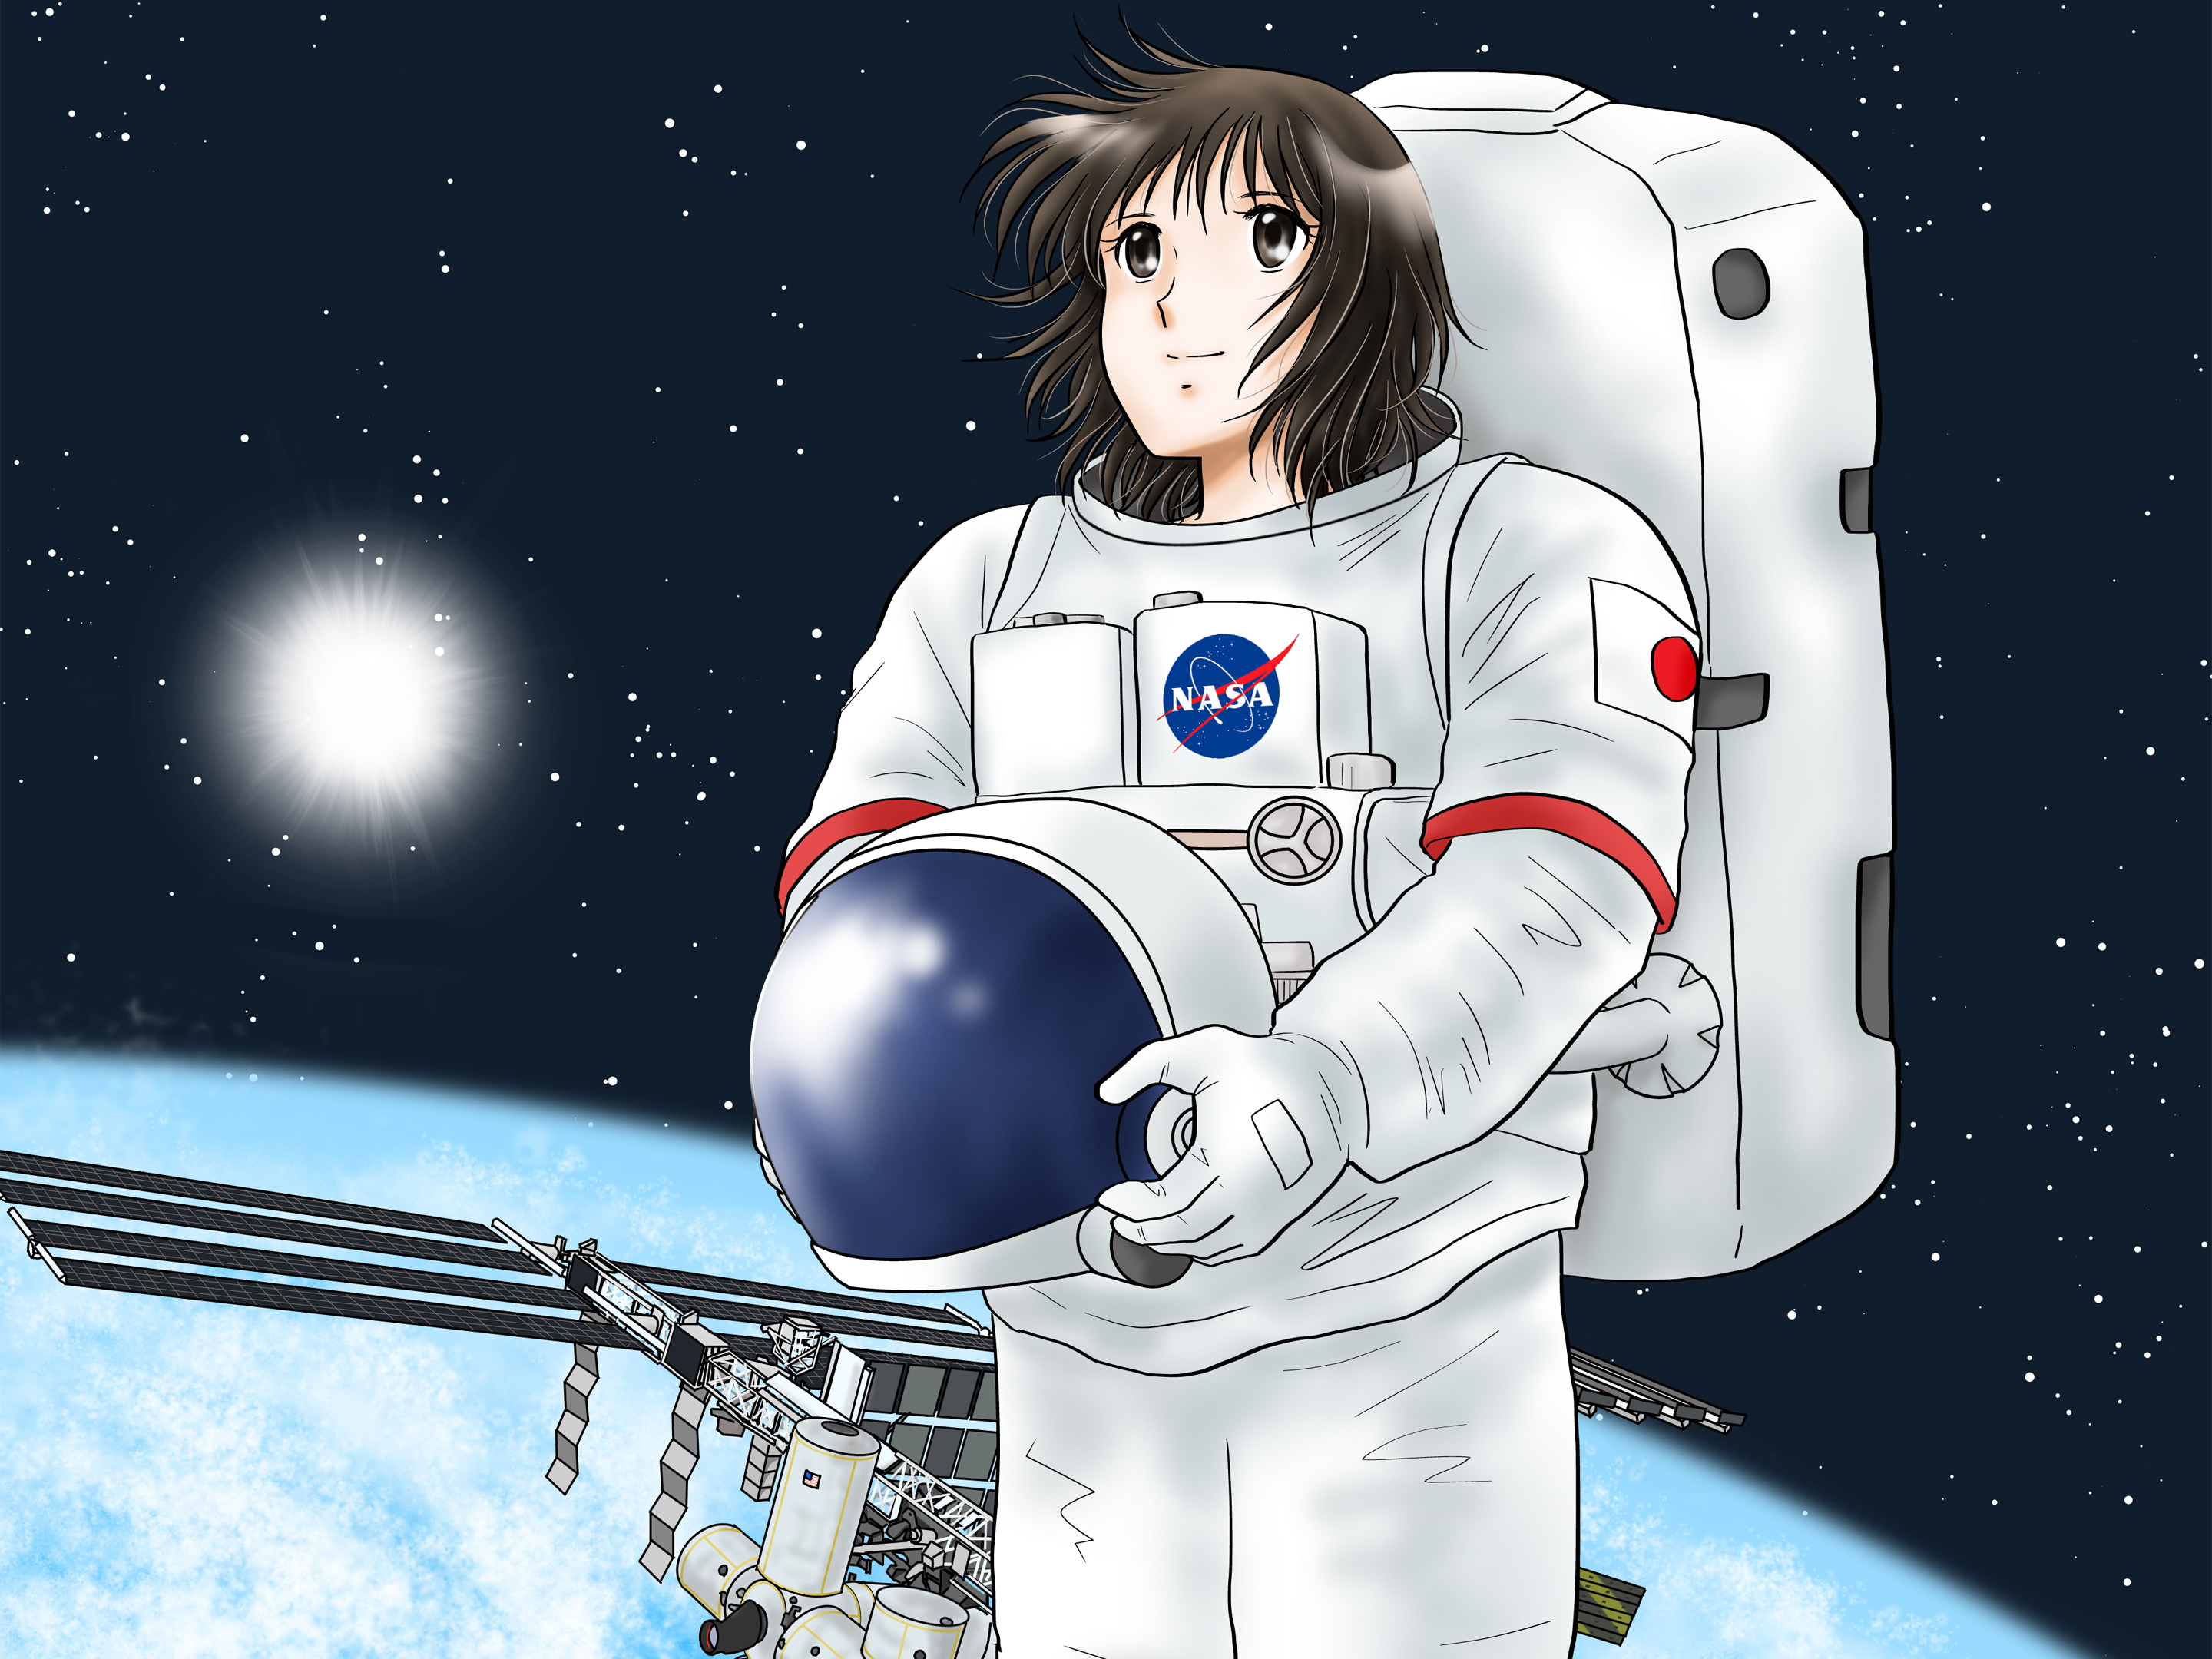 宇宙飛行士 Astronaut 女の子に人気 さくら Sakura あこがれの職業紹介